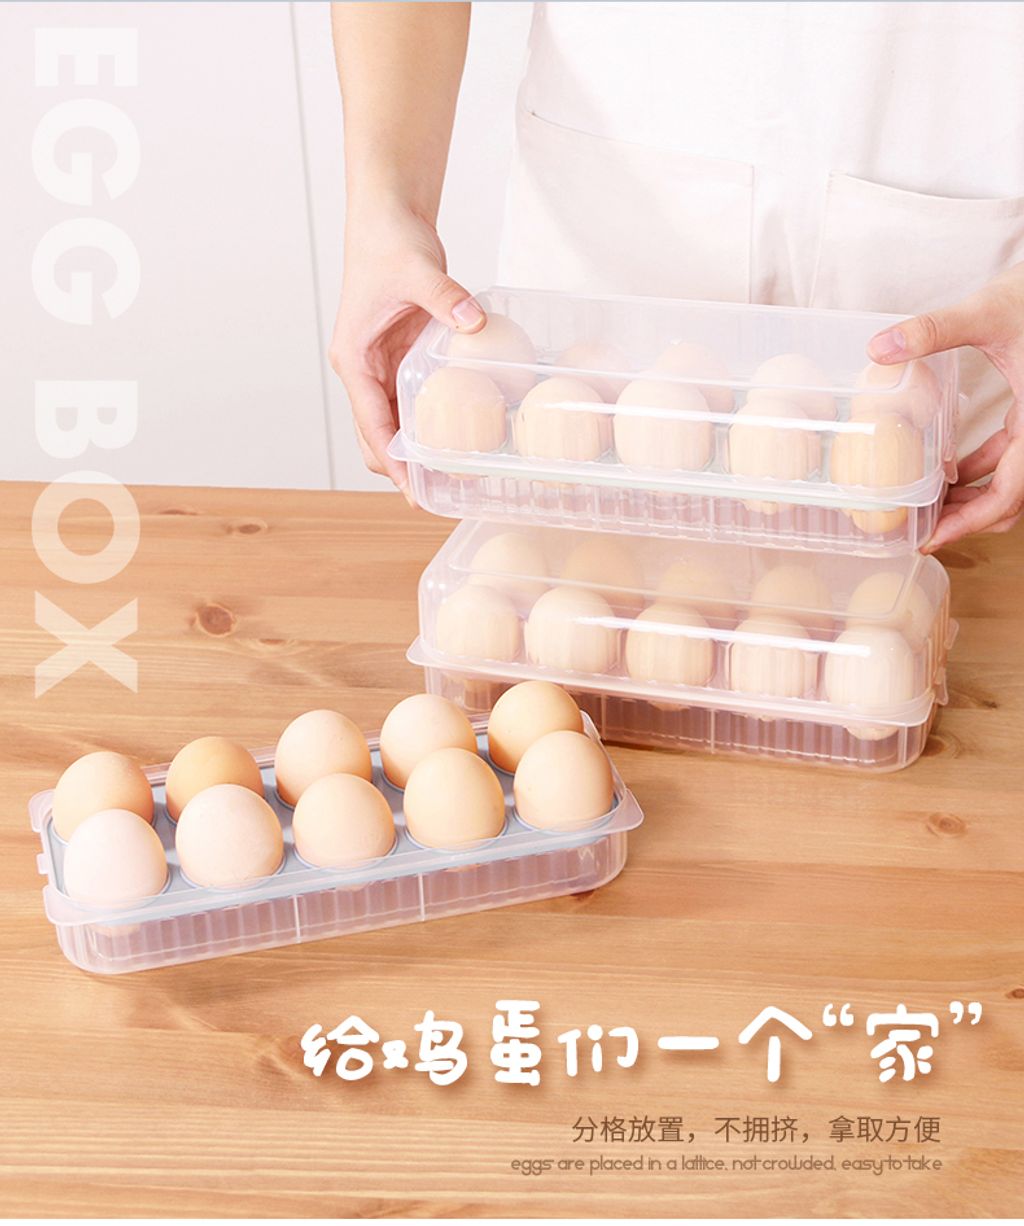 10 egg 6